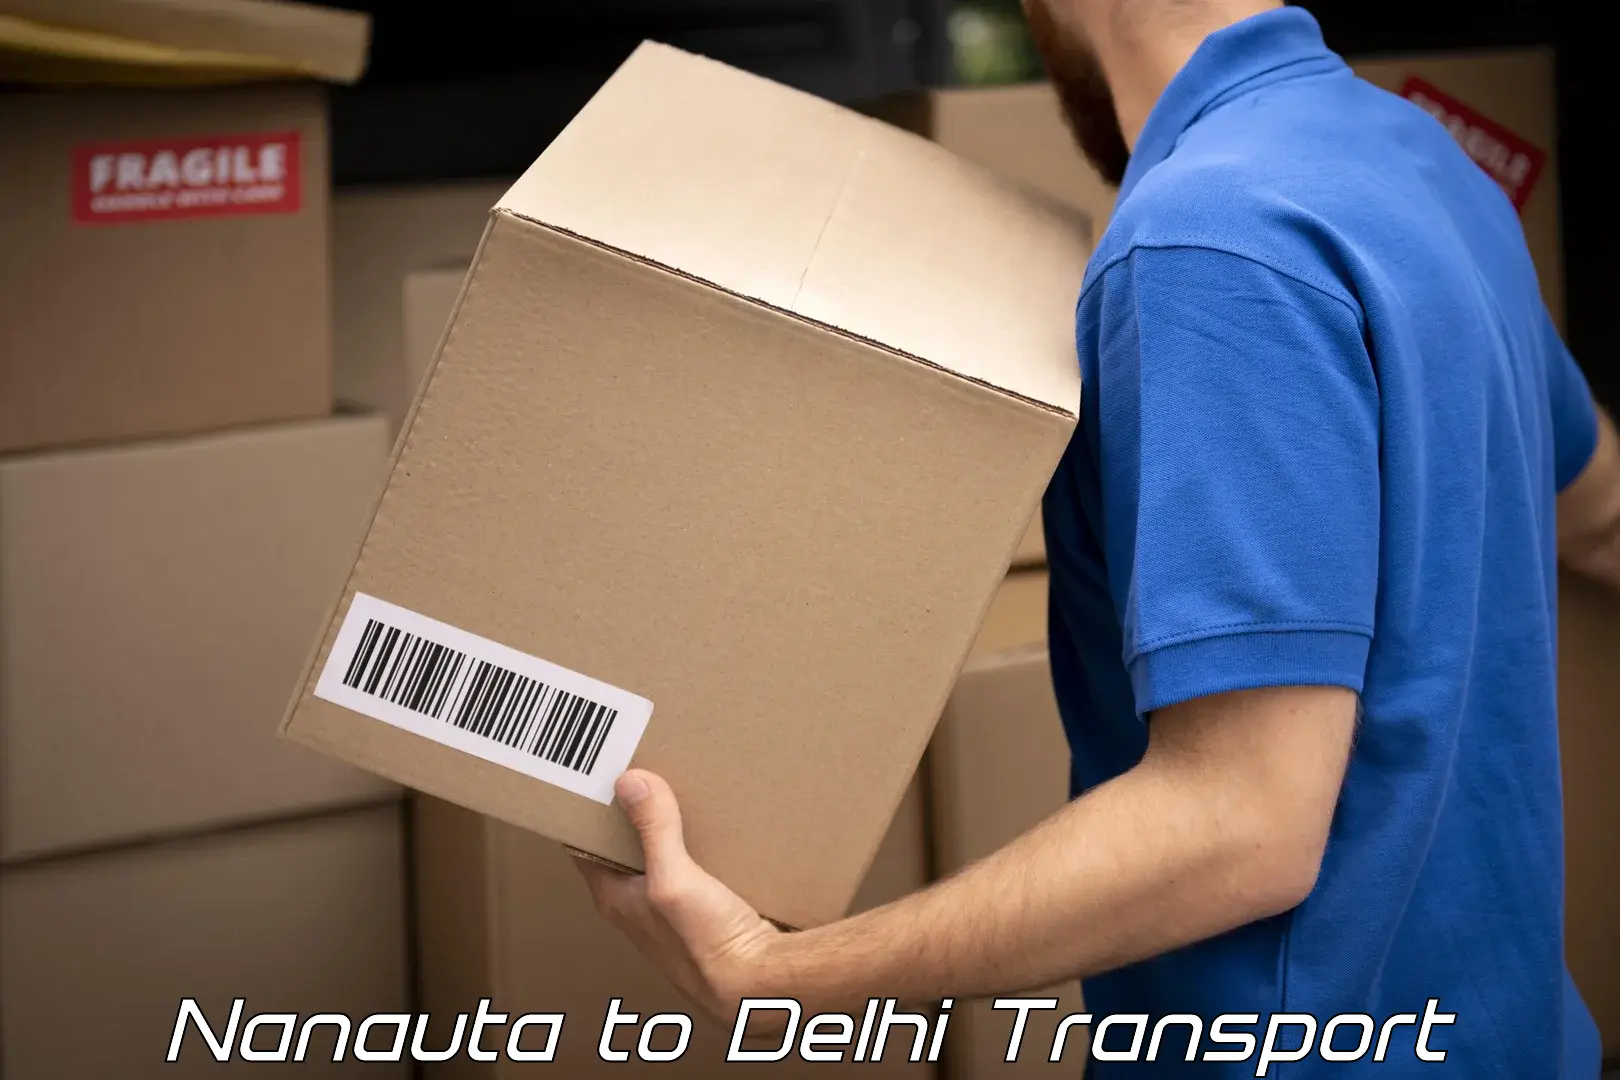 Land transport services Nanauta to Delhi